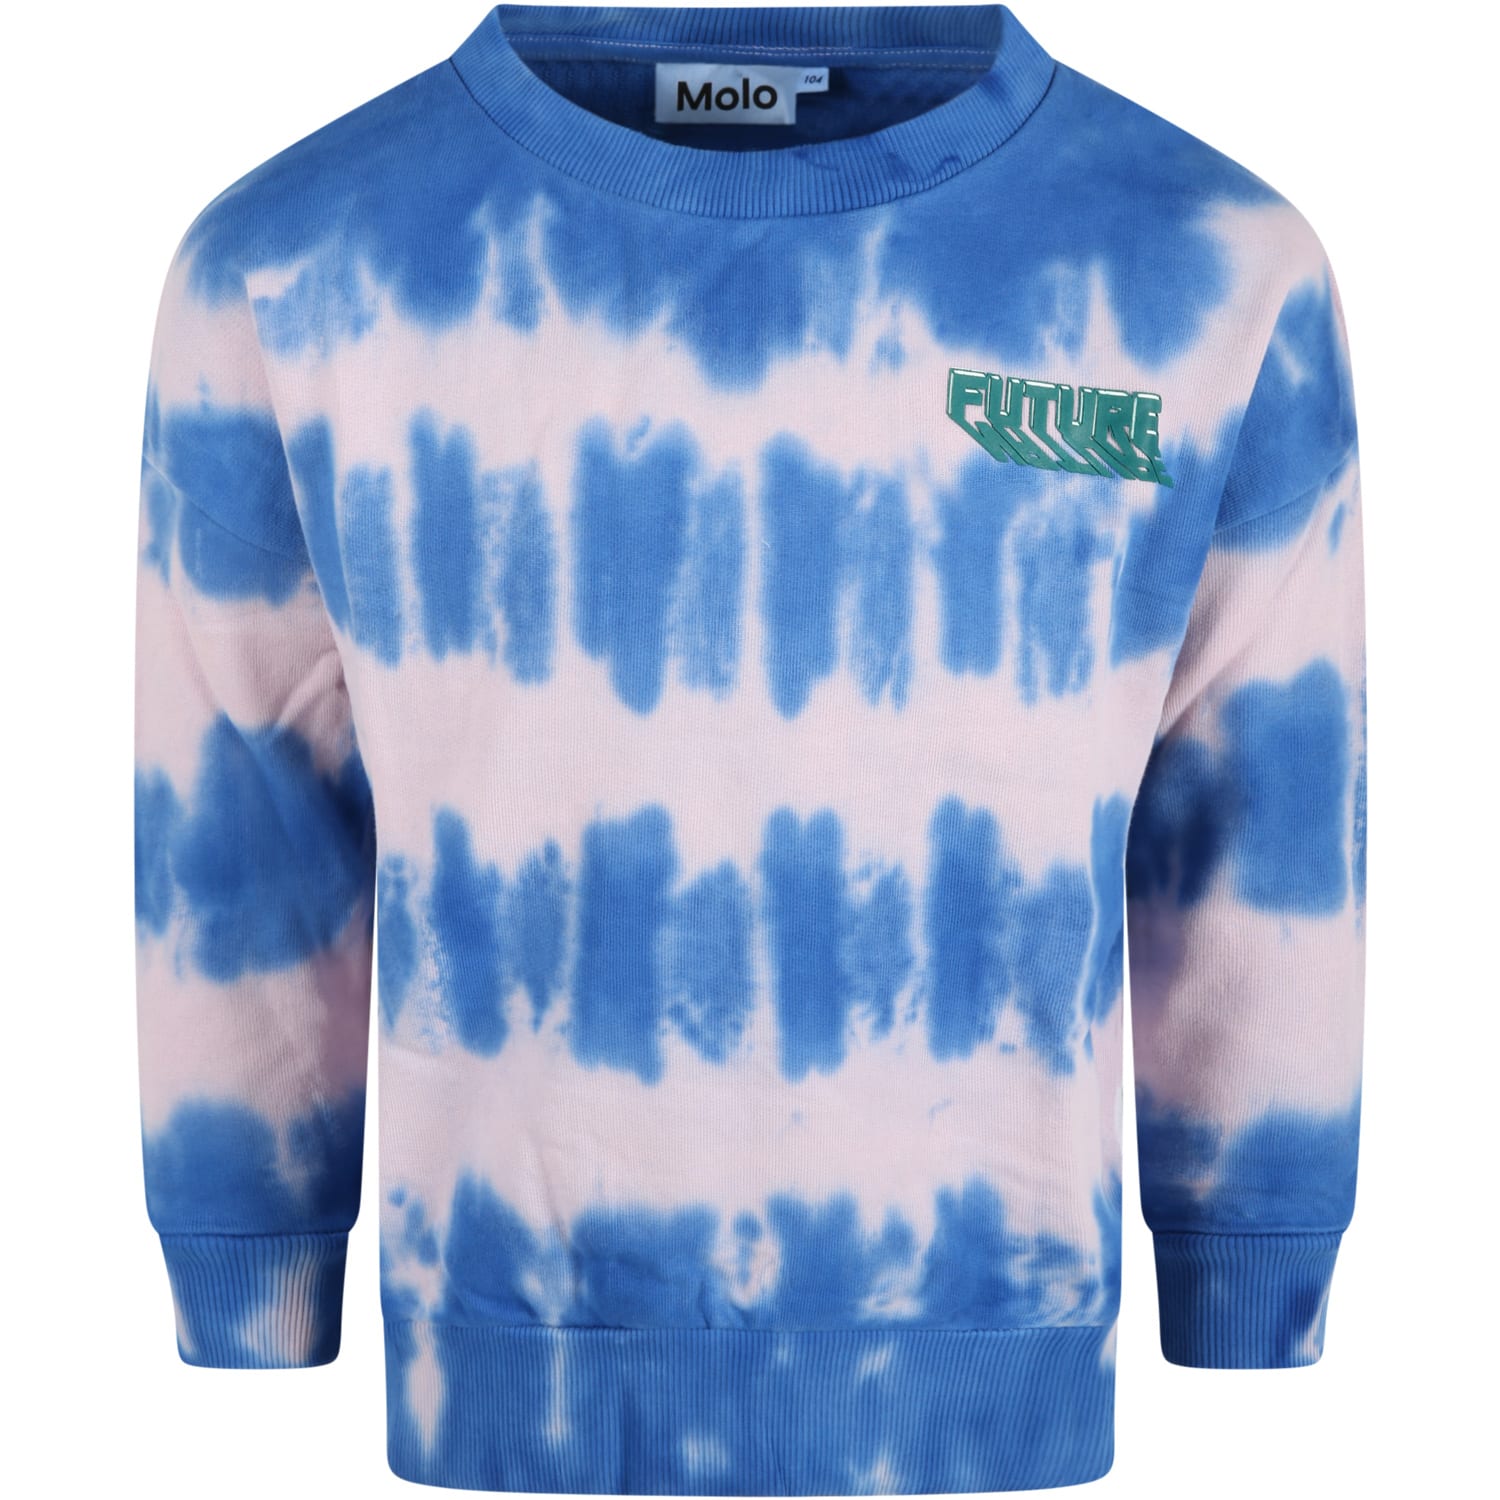 Molo Multicolor Sweatshirt For Girl